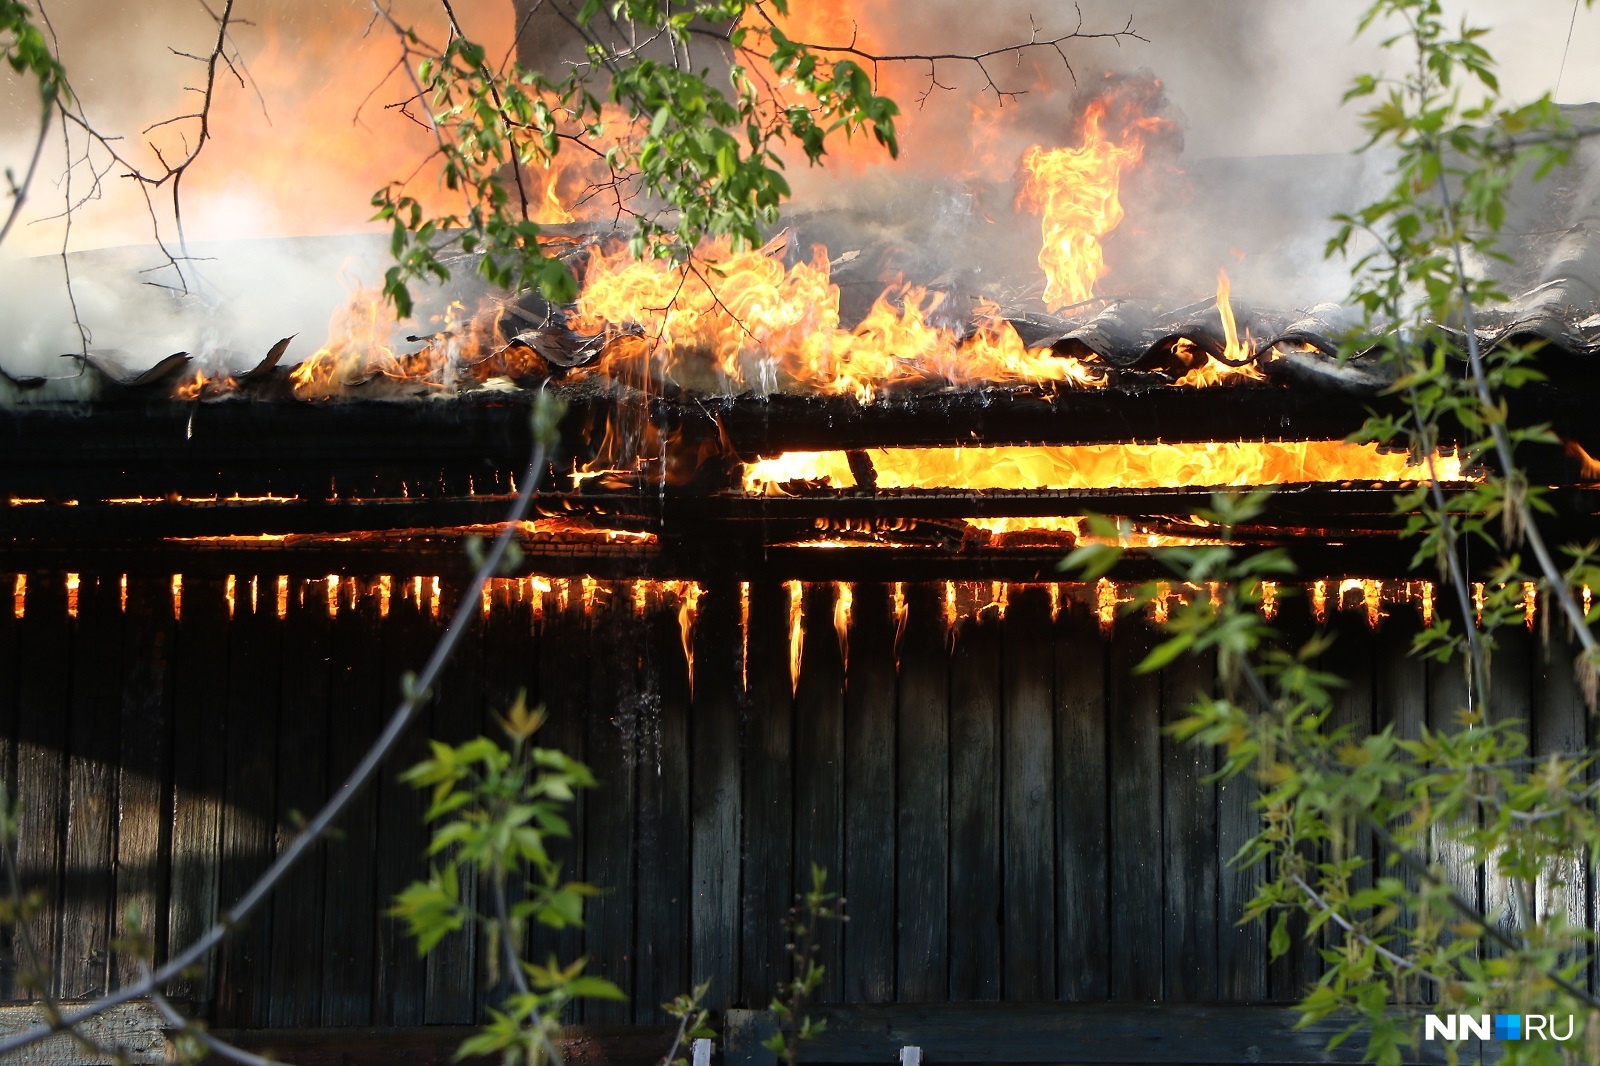 Мужчина сжег дом бывшей любовницы в Ваче. Женщина и ее родственник погибли